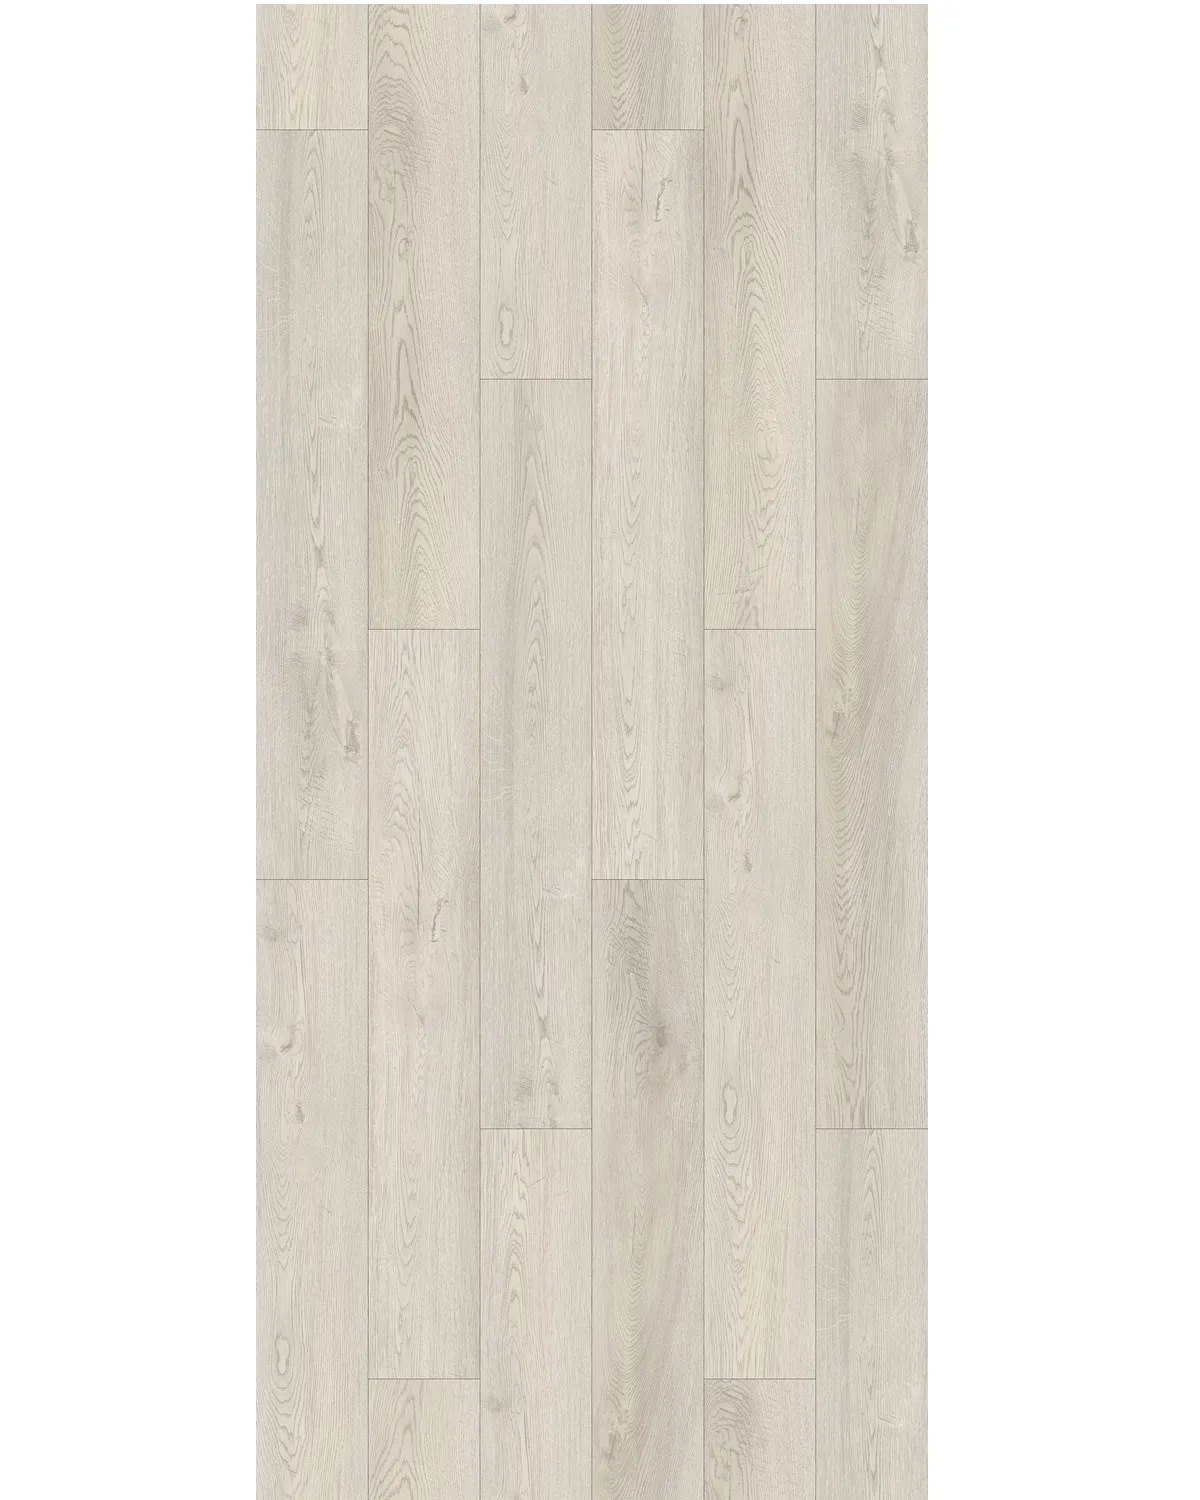 Waterproof wood pattern plastic flooring luxury vinyl plank spc flooring made in Vietnam ready to ship